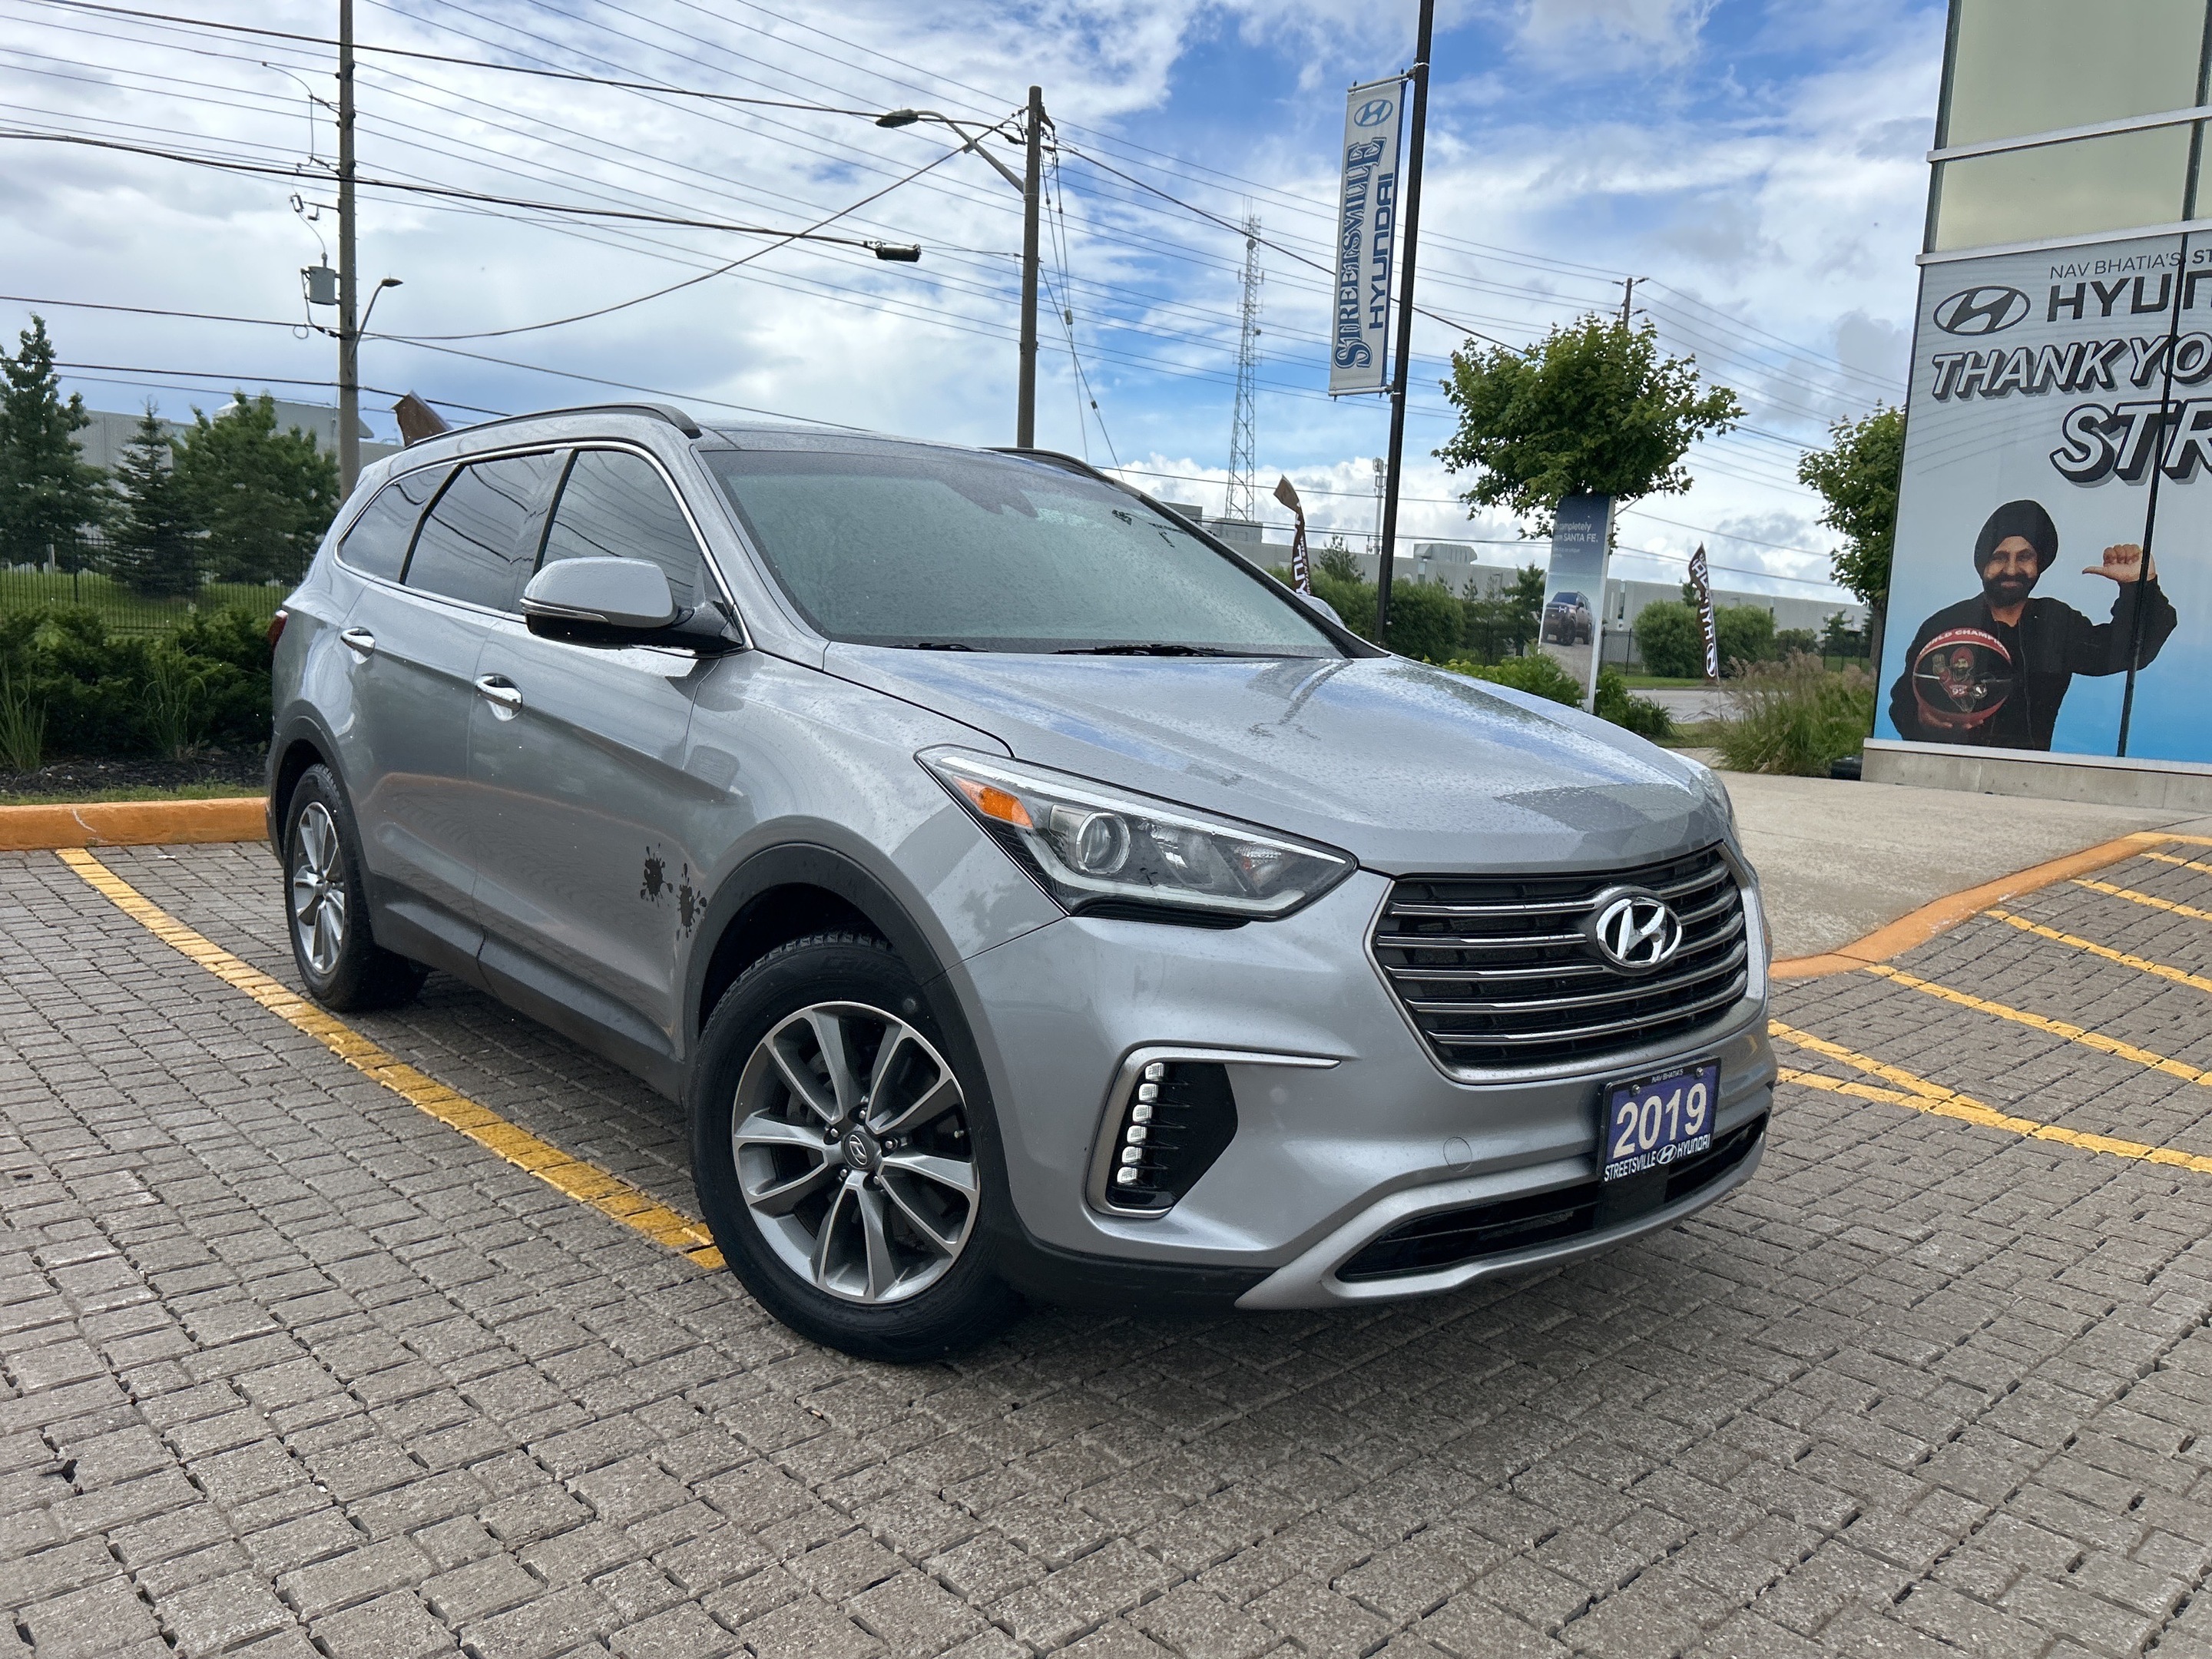 2019 Hyundai Santa Fe XL Luxury